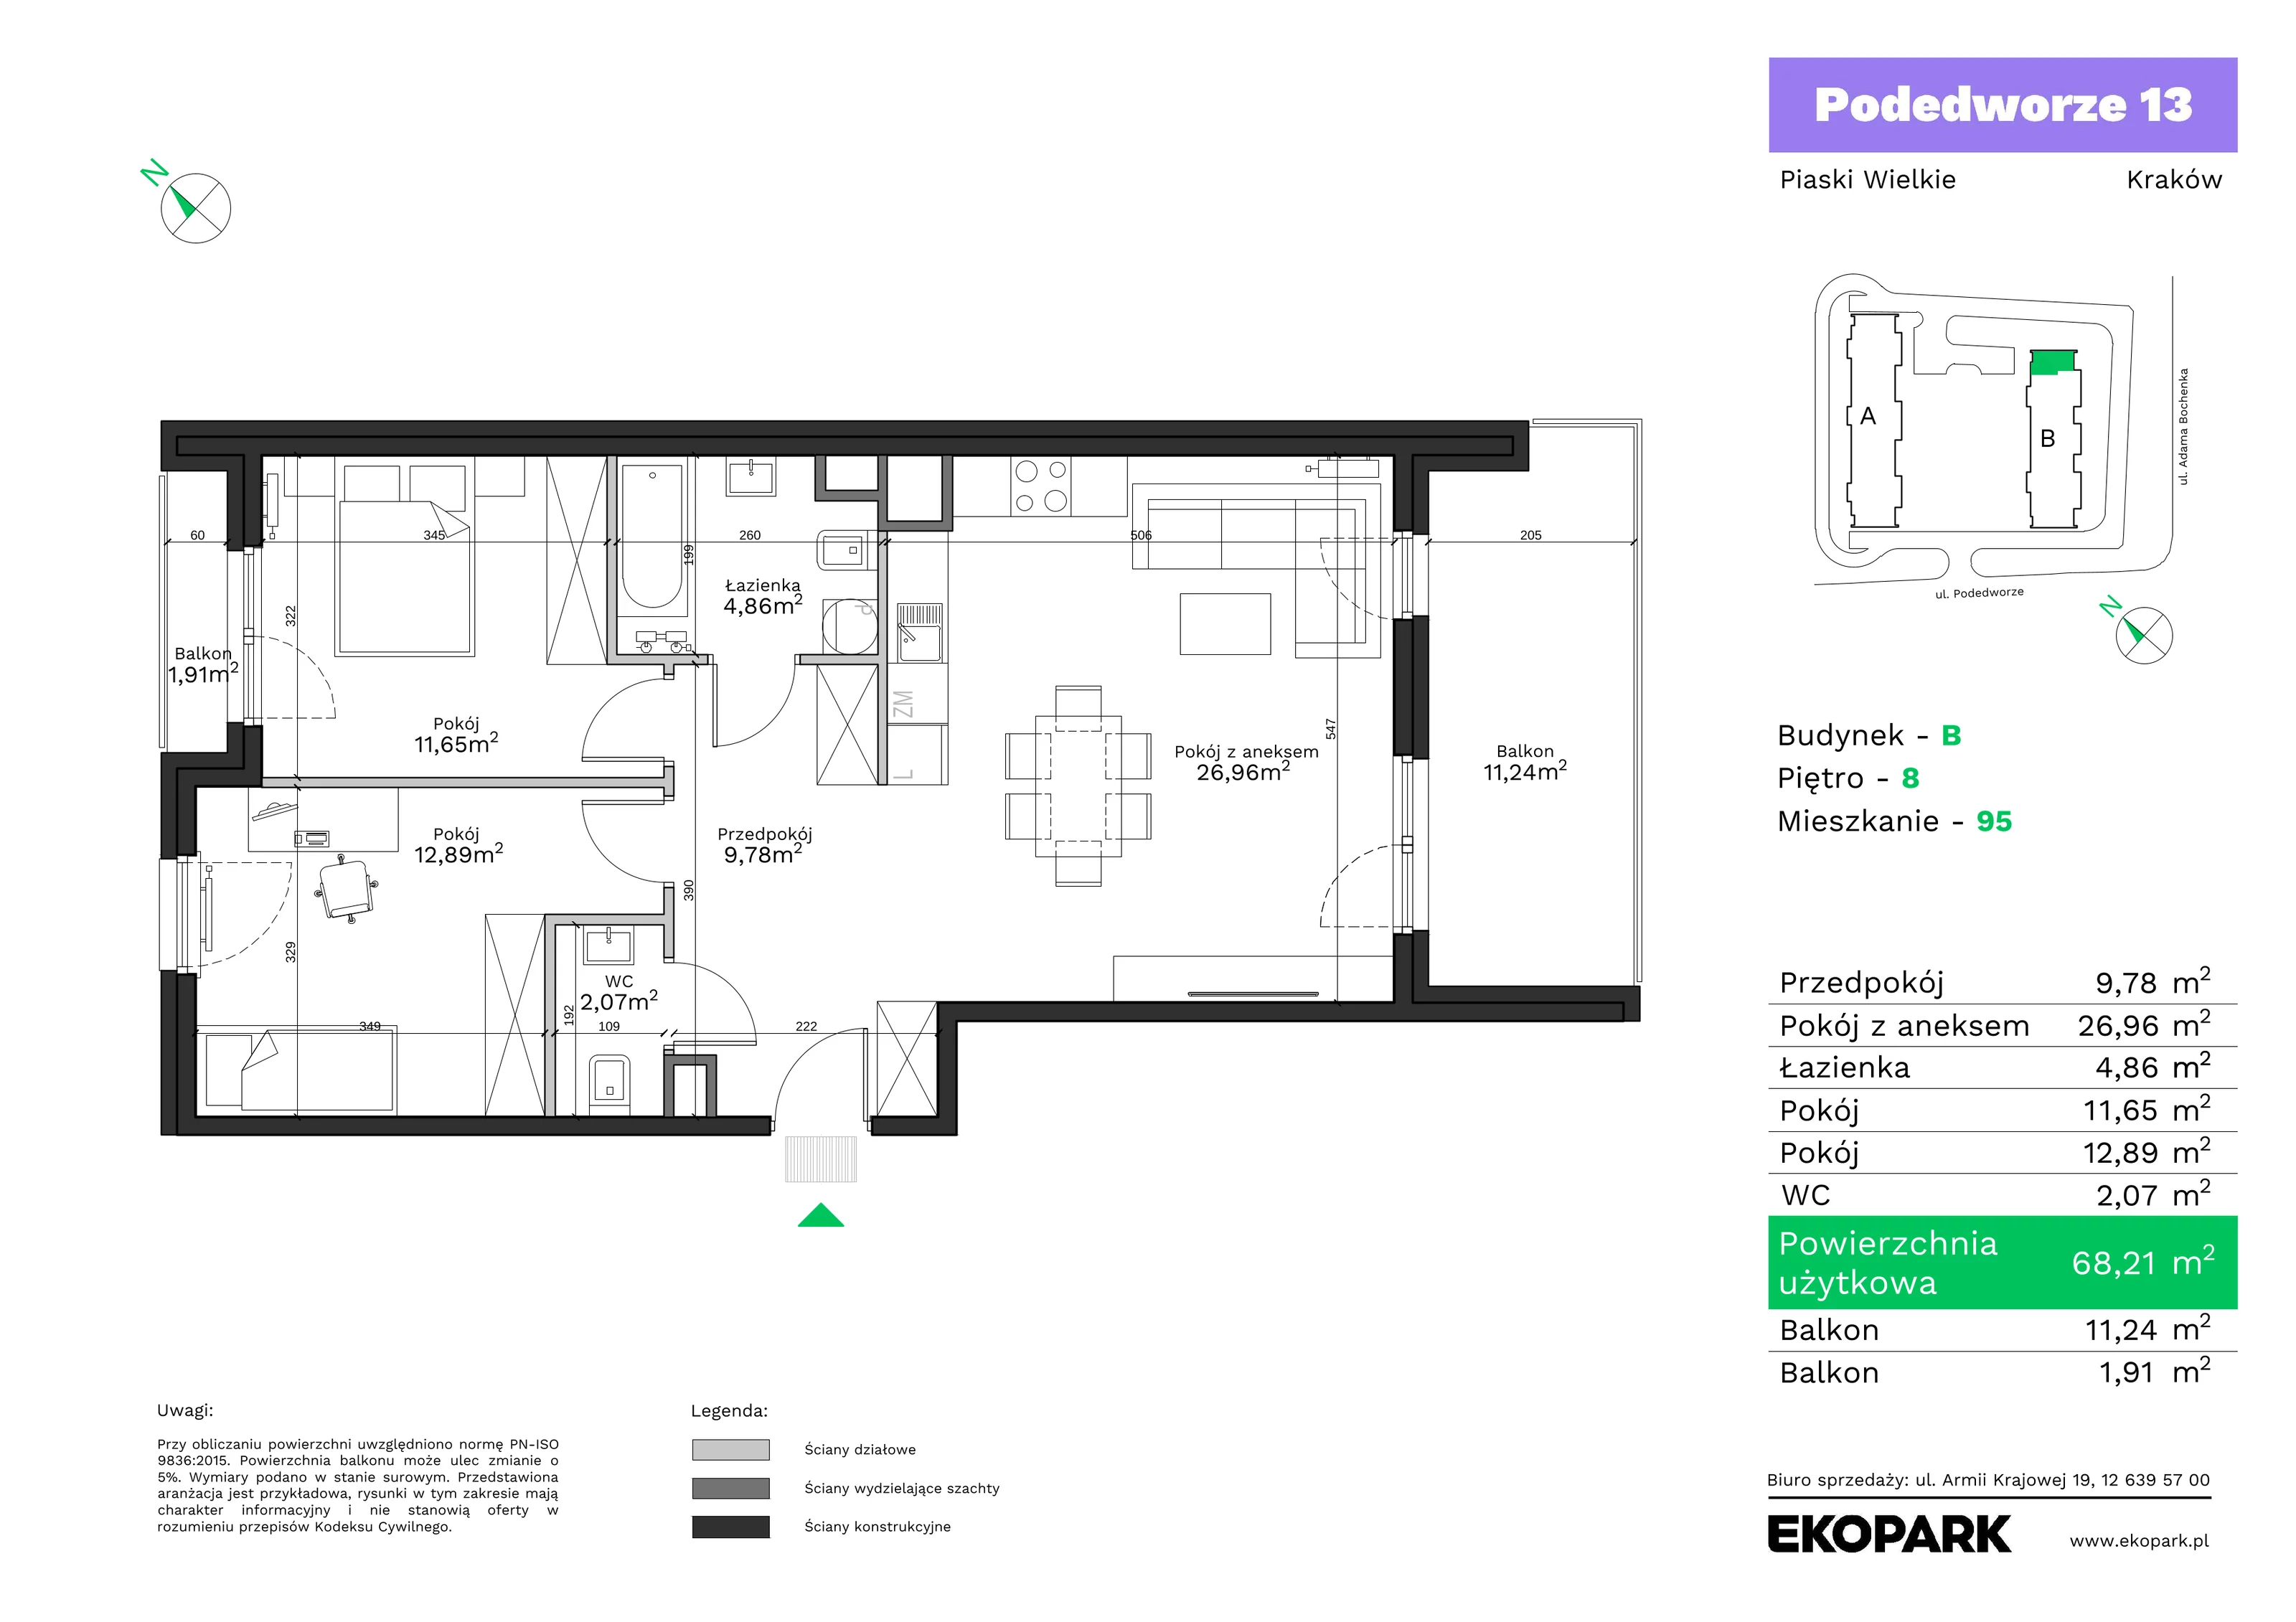 Mieszkanie 68,21 m², piętro 8, oferta nr B95, Podedworze 13, Kraków, Podgórze Duchackie, Piaski Wielkie, ul. Podedworze 13